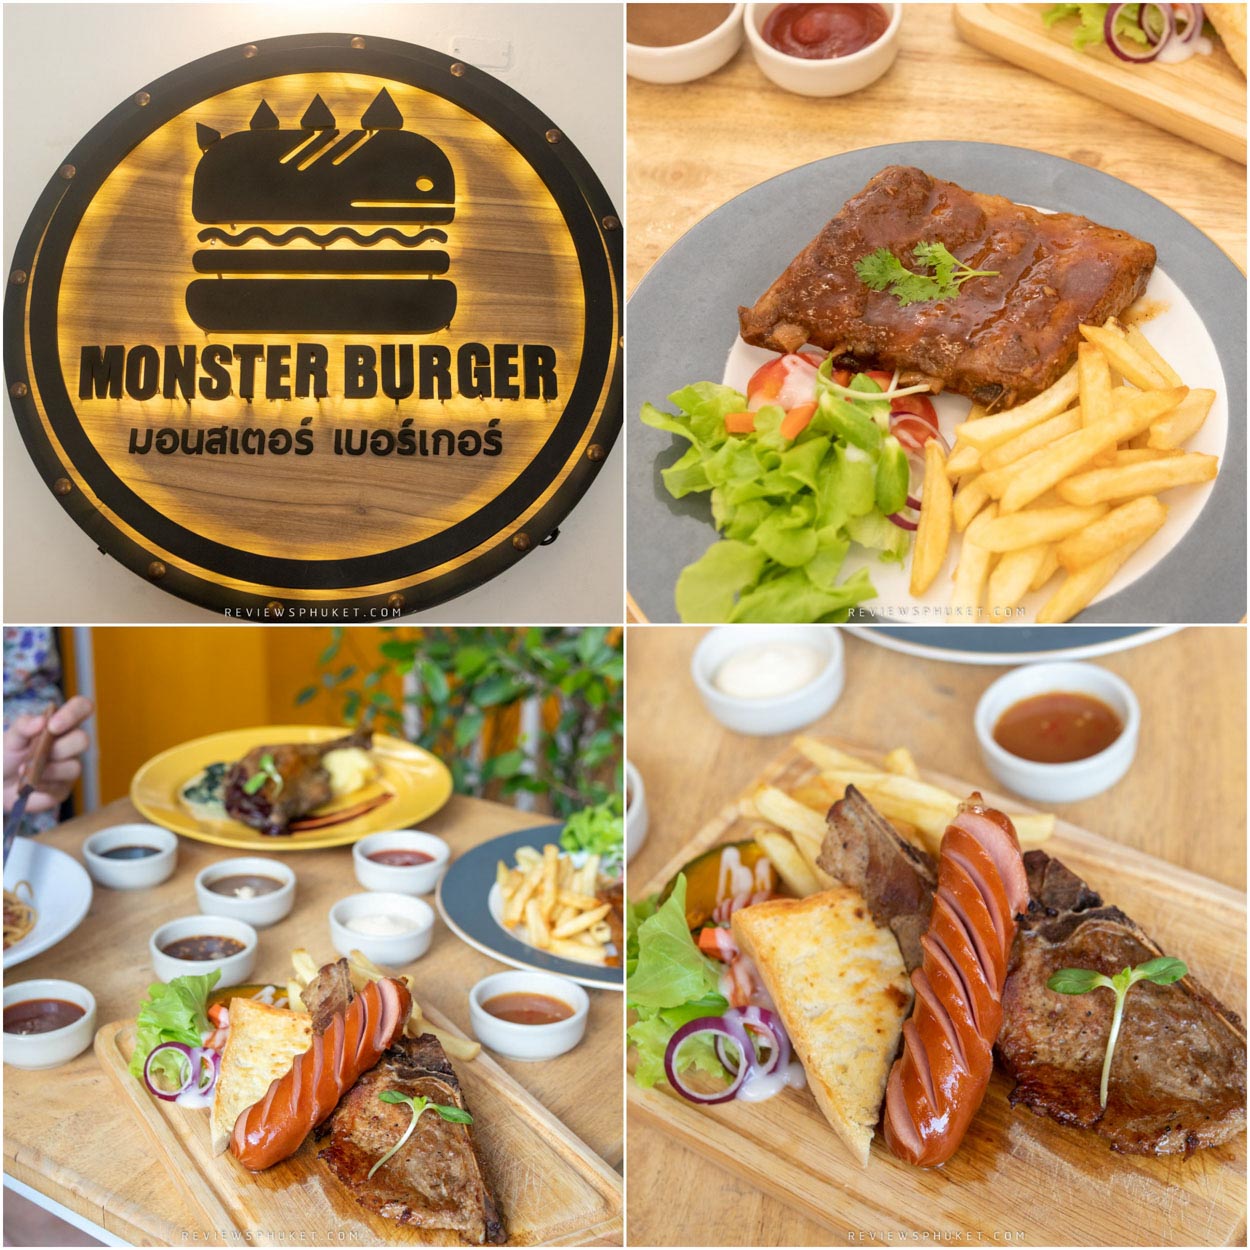 Monster Steak เสต็กร้านเด็ดเปิดใหม่แห่งภูเก็ต ที่ยก Monster Burger ร้านดัง ในตำนานจากเกาะพีพี มาให้ลูกค้าเกาะภูเก็ตได้ลิ้มรสกันครับ